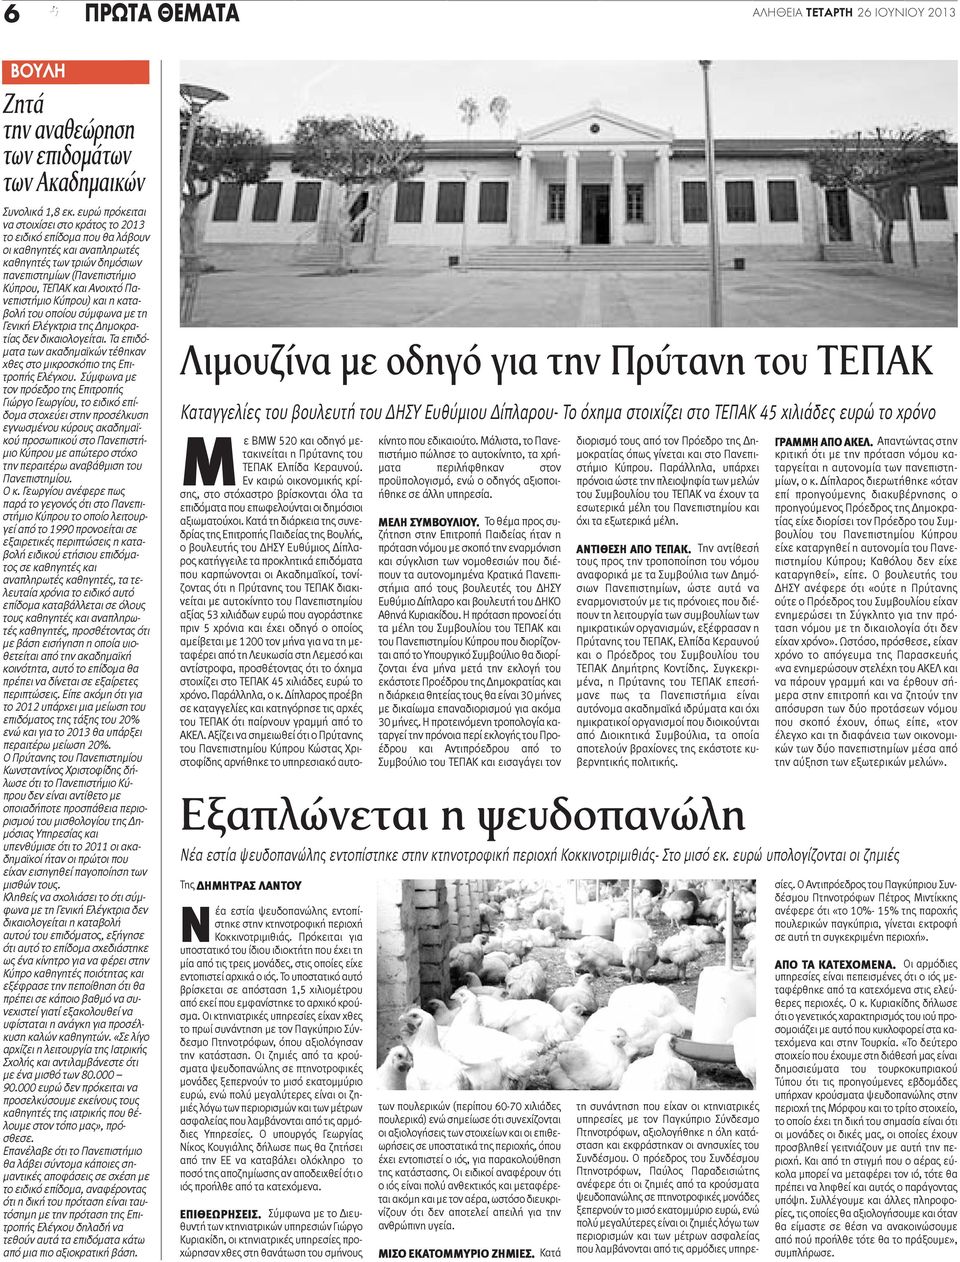 Πανεπιστήμιο Κύπρου) και η καταβολή του οποίου σύμφωνα με τη Γενική Ελέγκτρια της Δημοκρατίας δεν δικαιολογείται. Τα επιδόματα των ακαδημαϊκών τέθηκαν χθες στο μικροσκόπιο της Επιτροπής Ελέγχου.